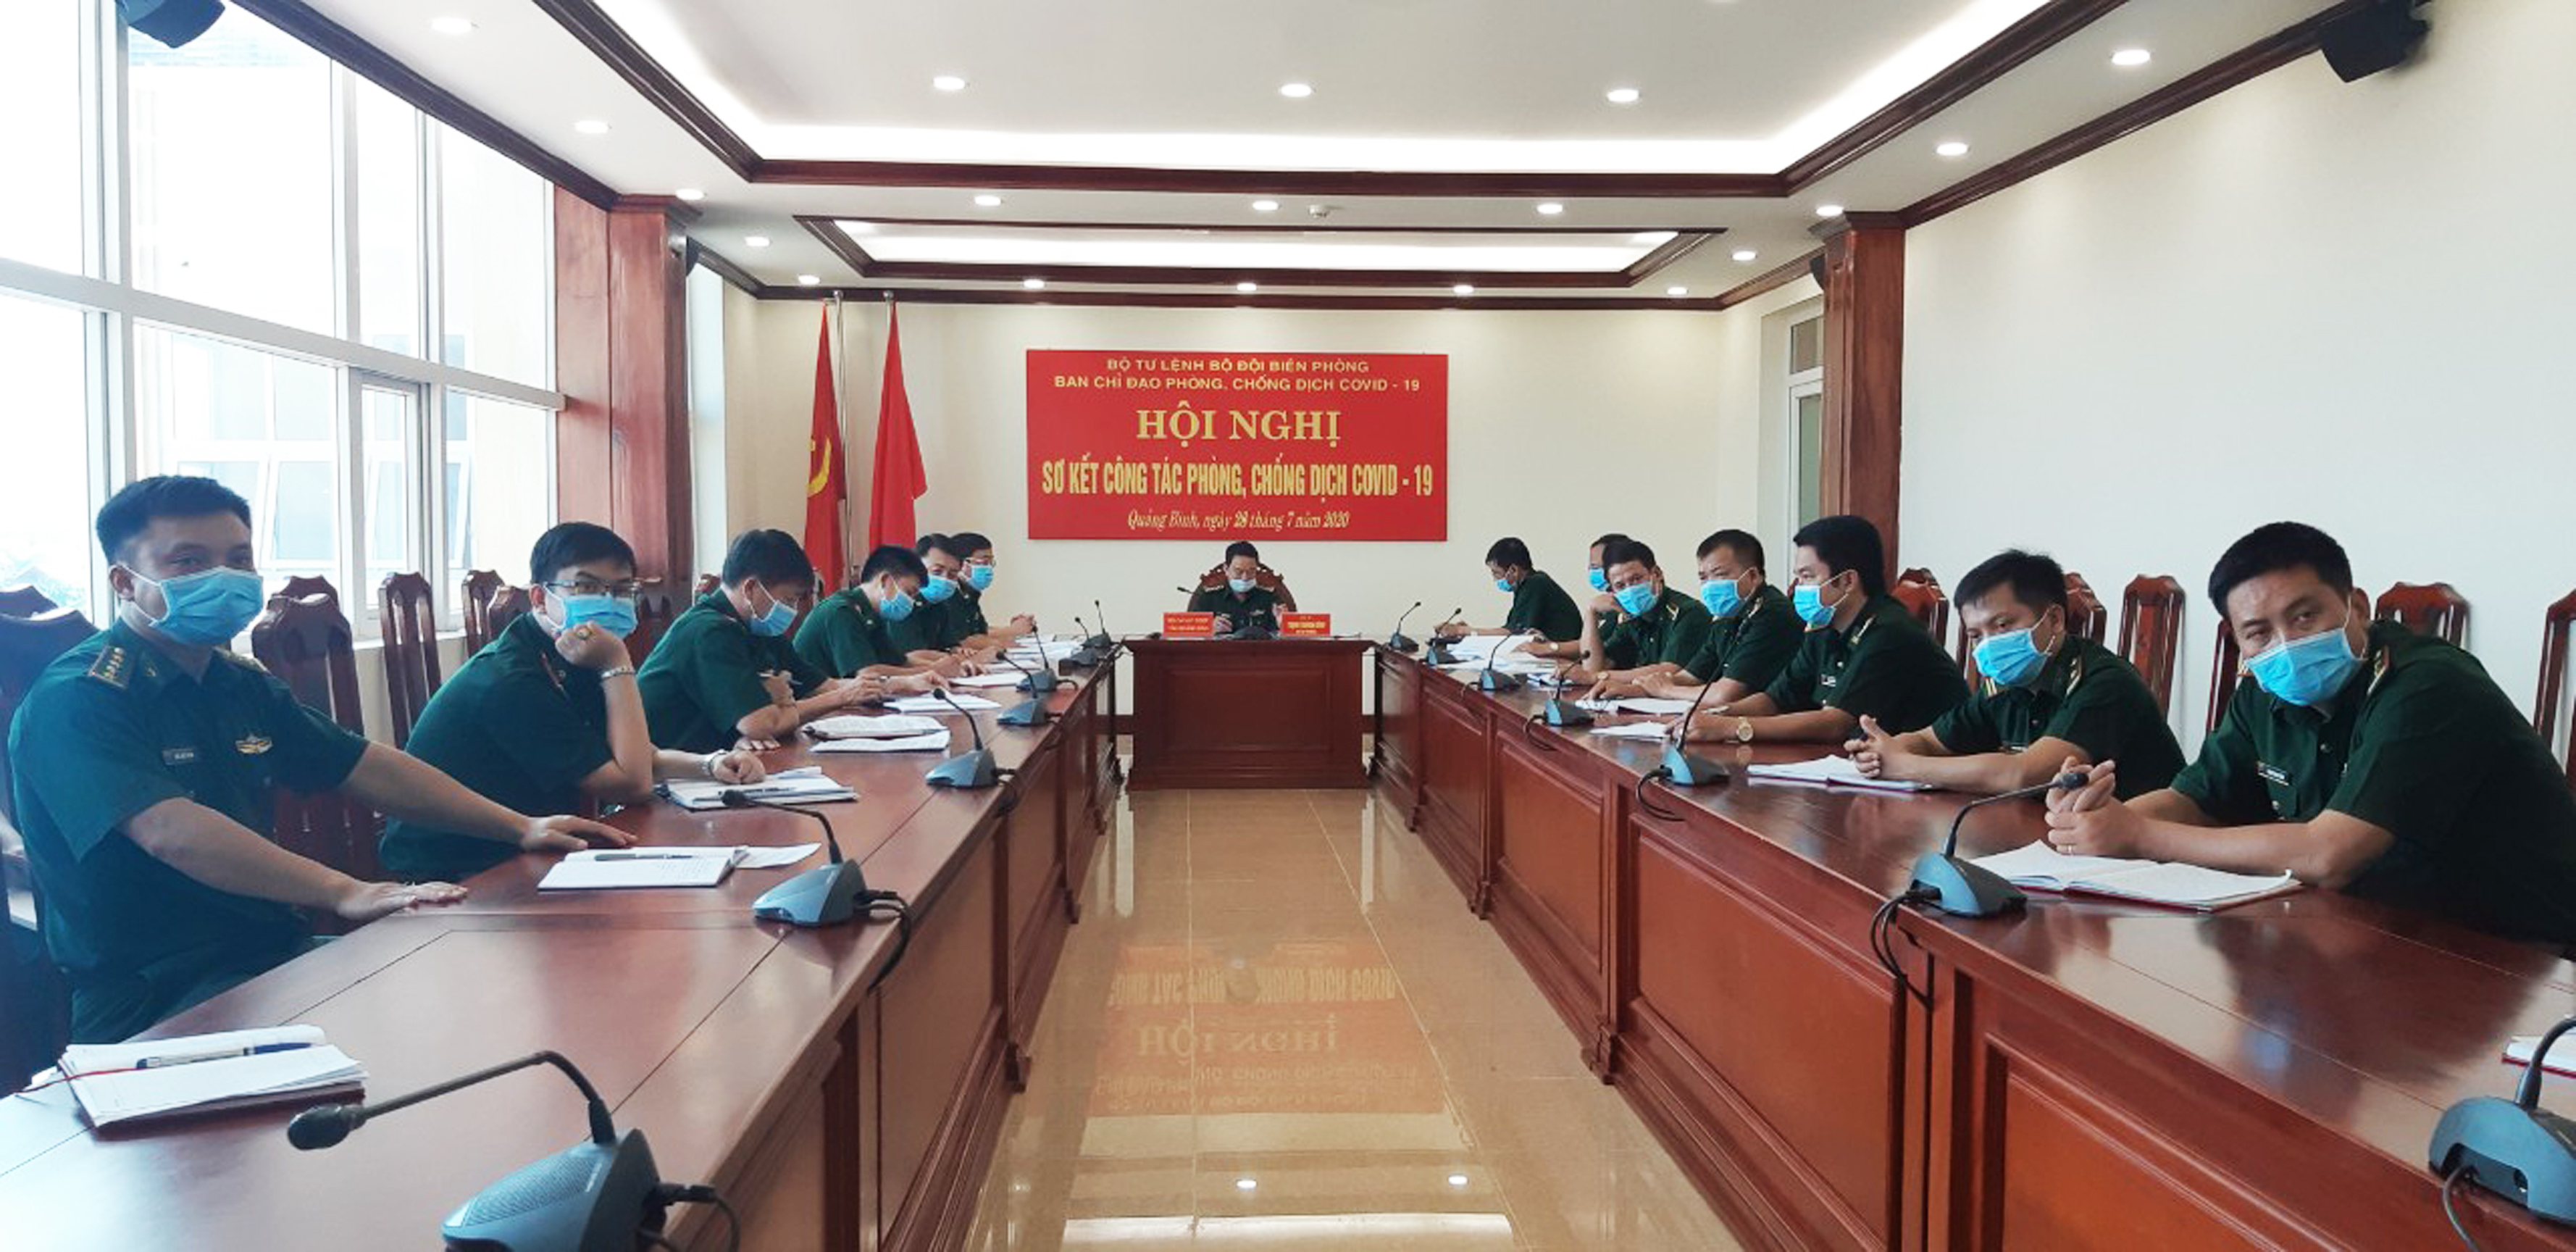  Hội nghị sơ kết công tác phòng, chống dịch bệnh Covid-19 tại điểm cầu Quảng Bình.